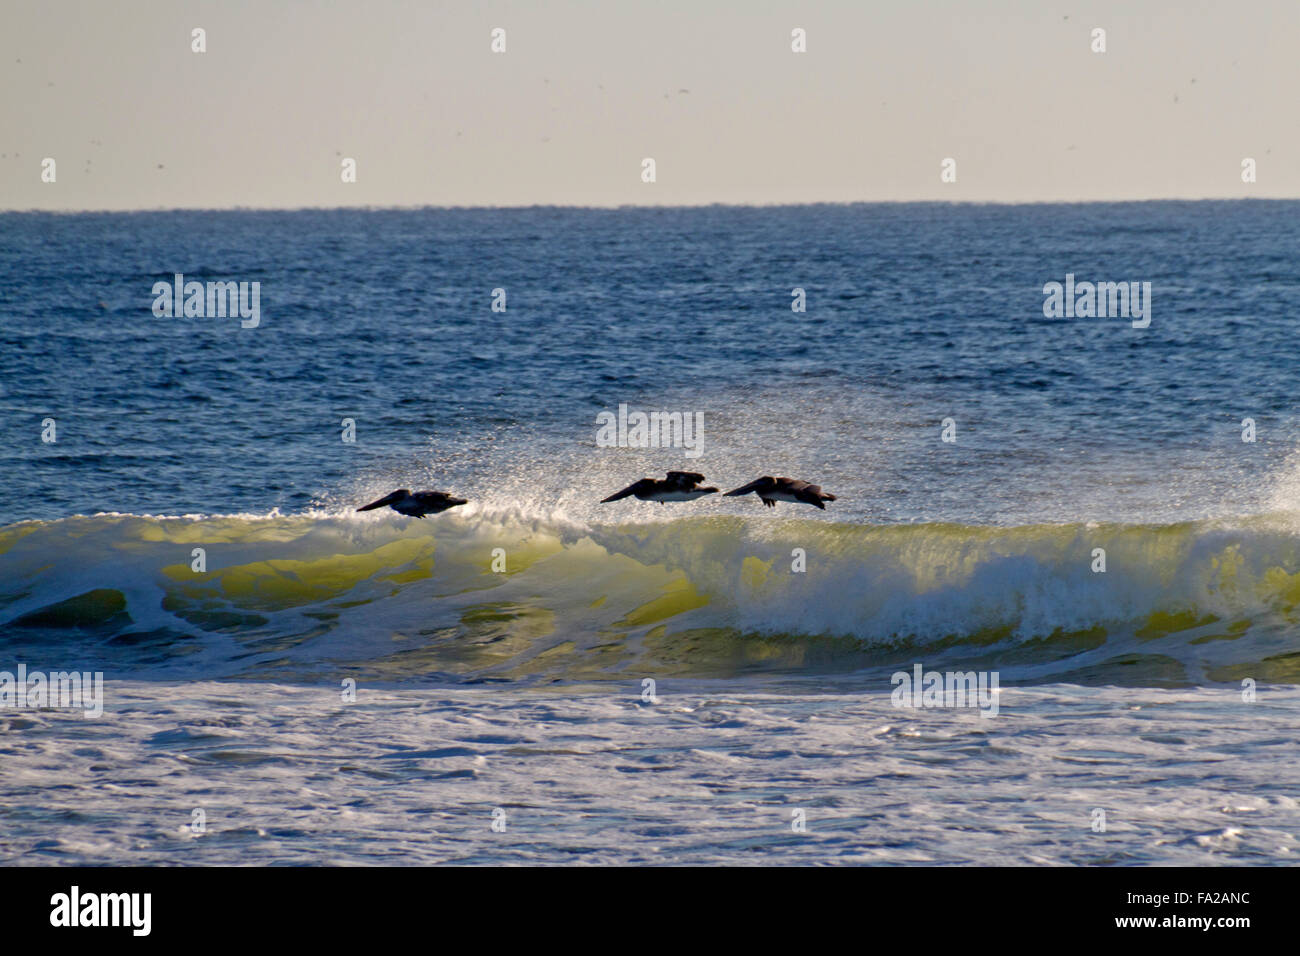 Drei Pelikane schweben durch Wasser aus der Spitze von einer durchscheinenden, brechen Ozeanwelle geblasen, wie die Jagd nach Nahrung auf ein Sunn fliegen Stockfoto